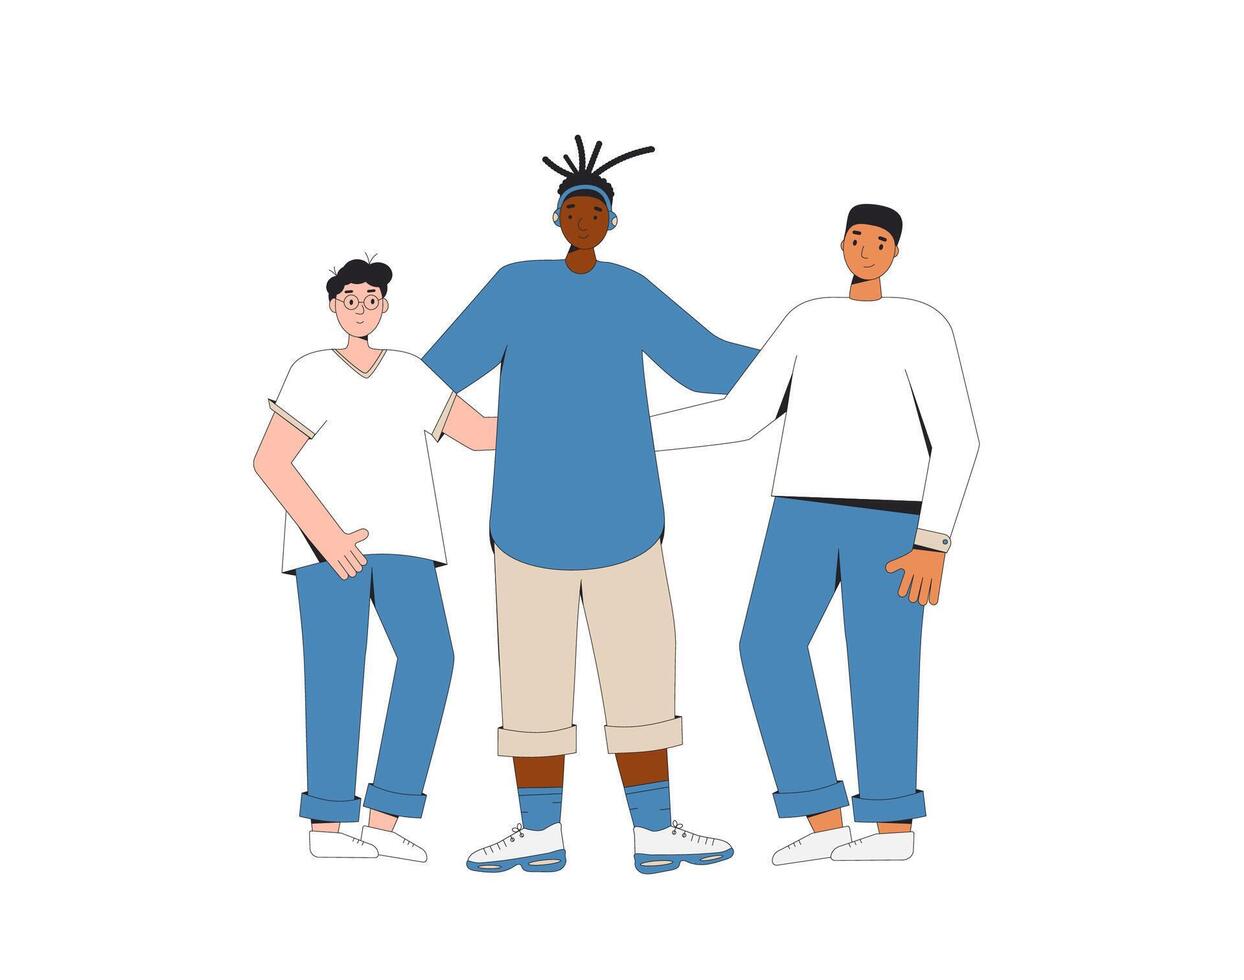 grupp av olika tonåringar stående tillsammans. ung manlig vänner bär i tillfällig kläder. Pojkar kramas varje Övrig. vektor linje illustration.